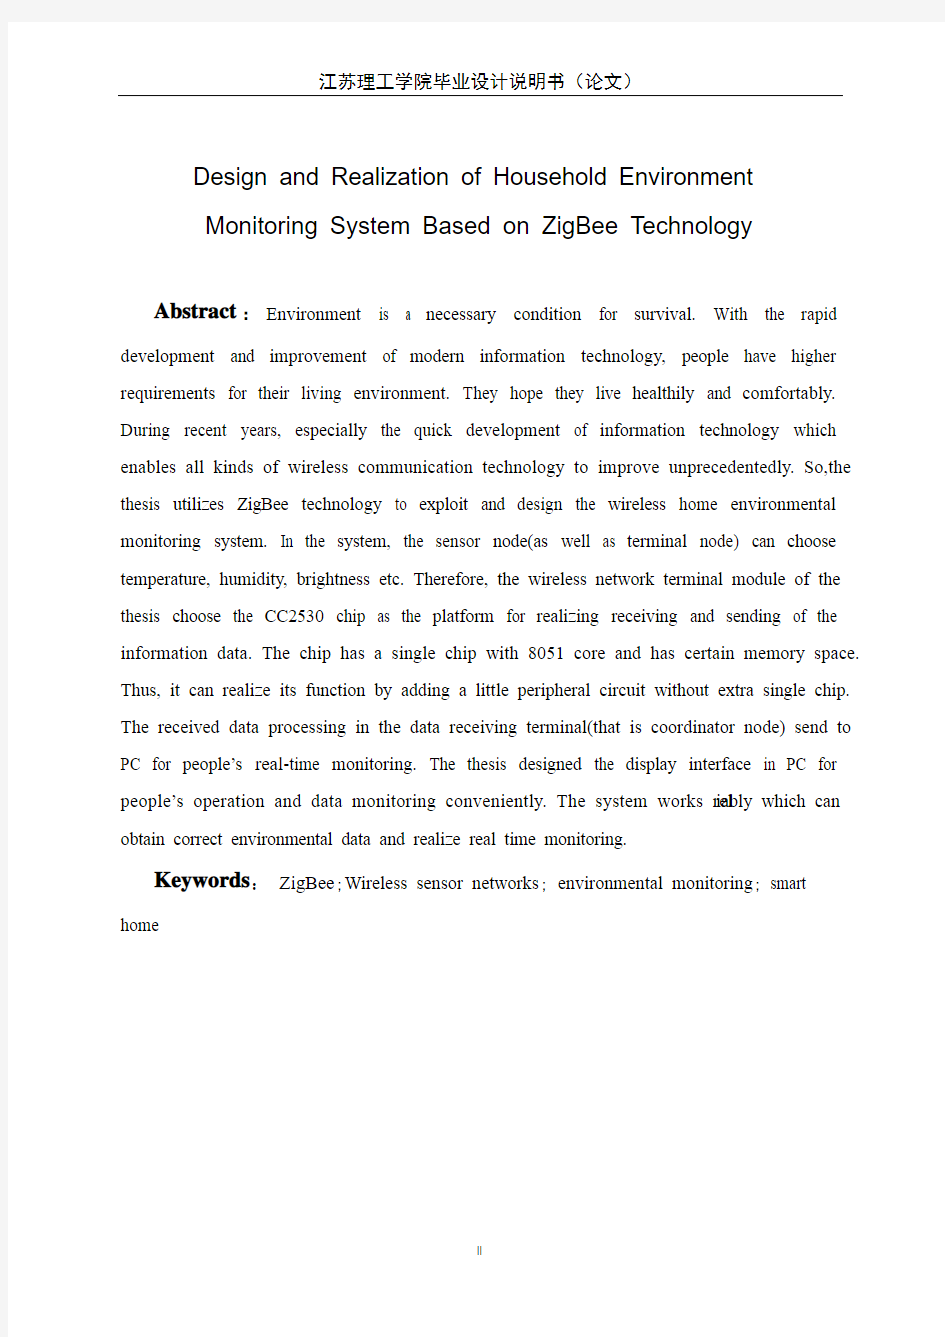 基于zigbee技术的家居环境监测系统的设计与实现毕业论文